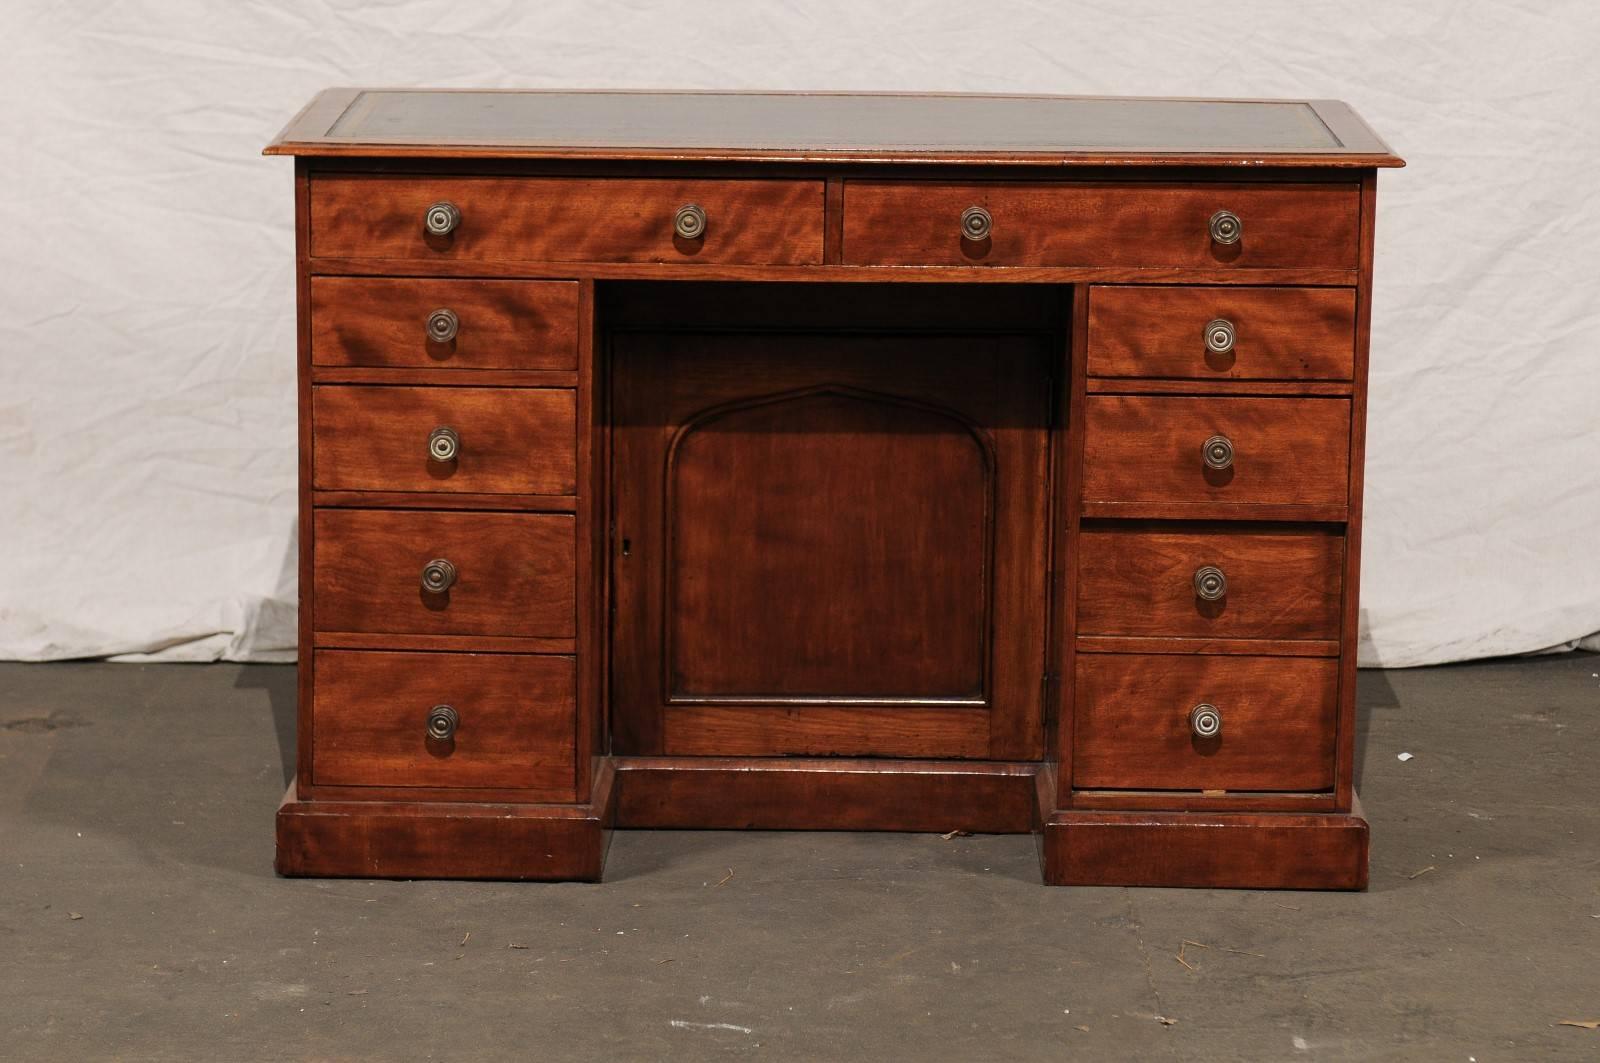 19th century English mahogany knee-hole desk.